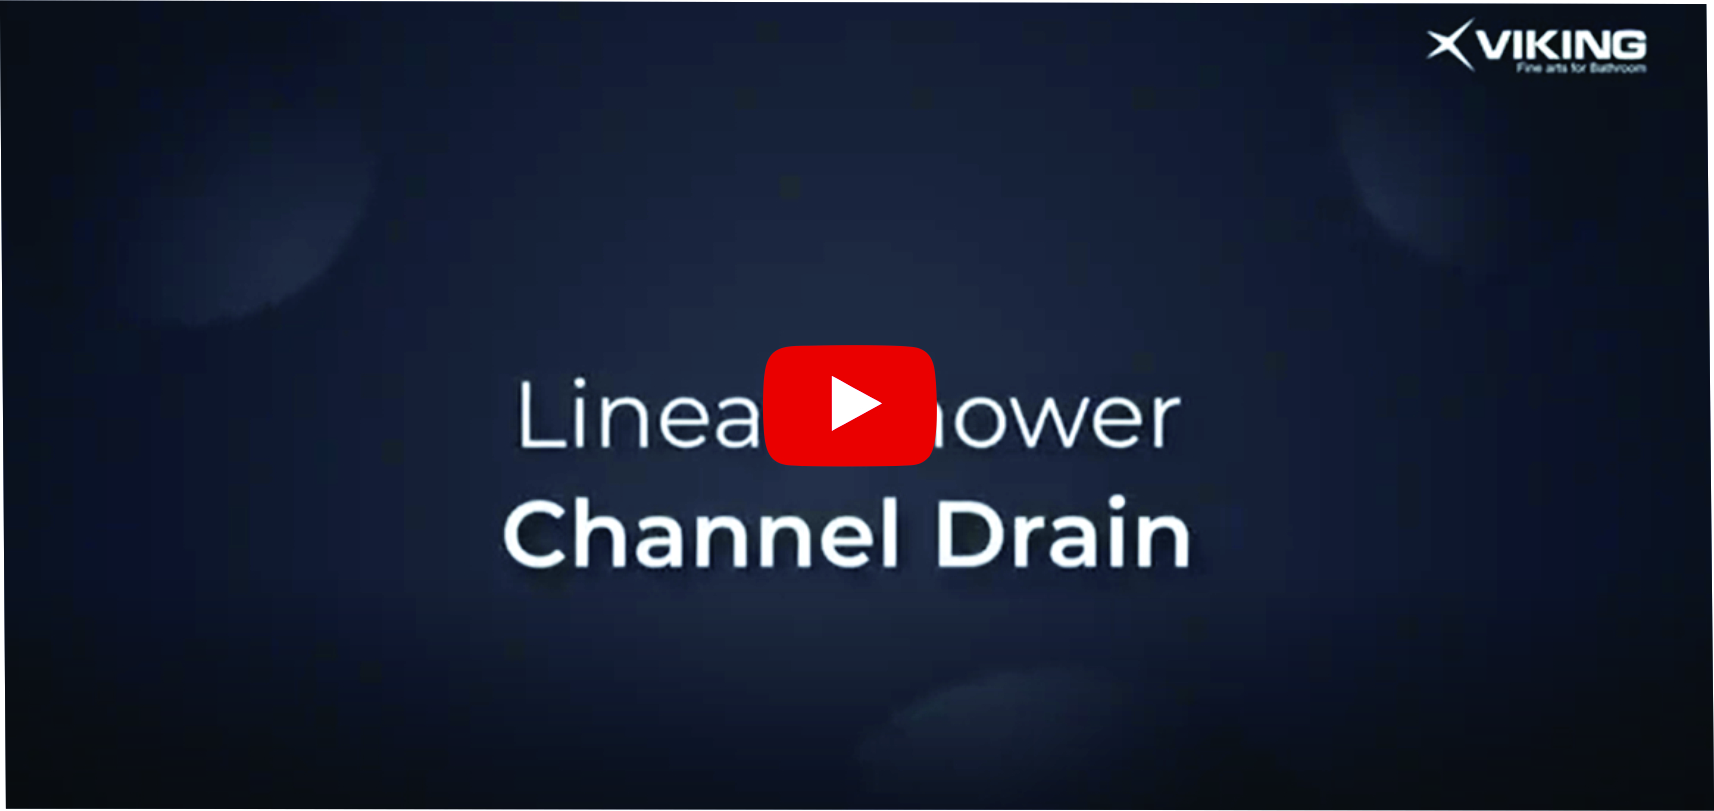 Linear Shower Channel Drain